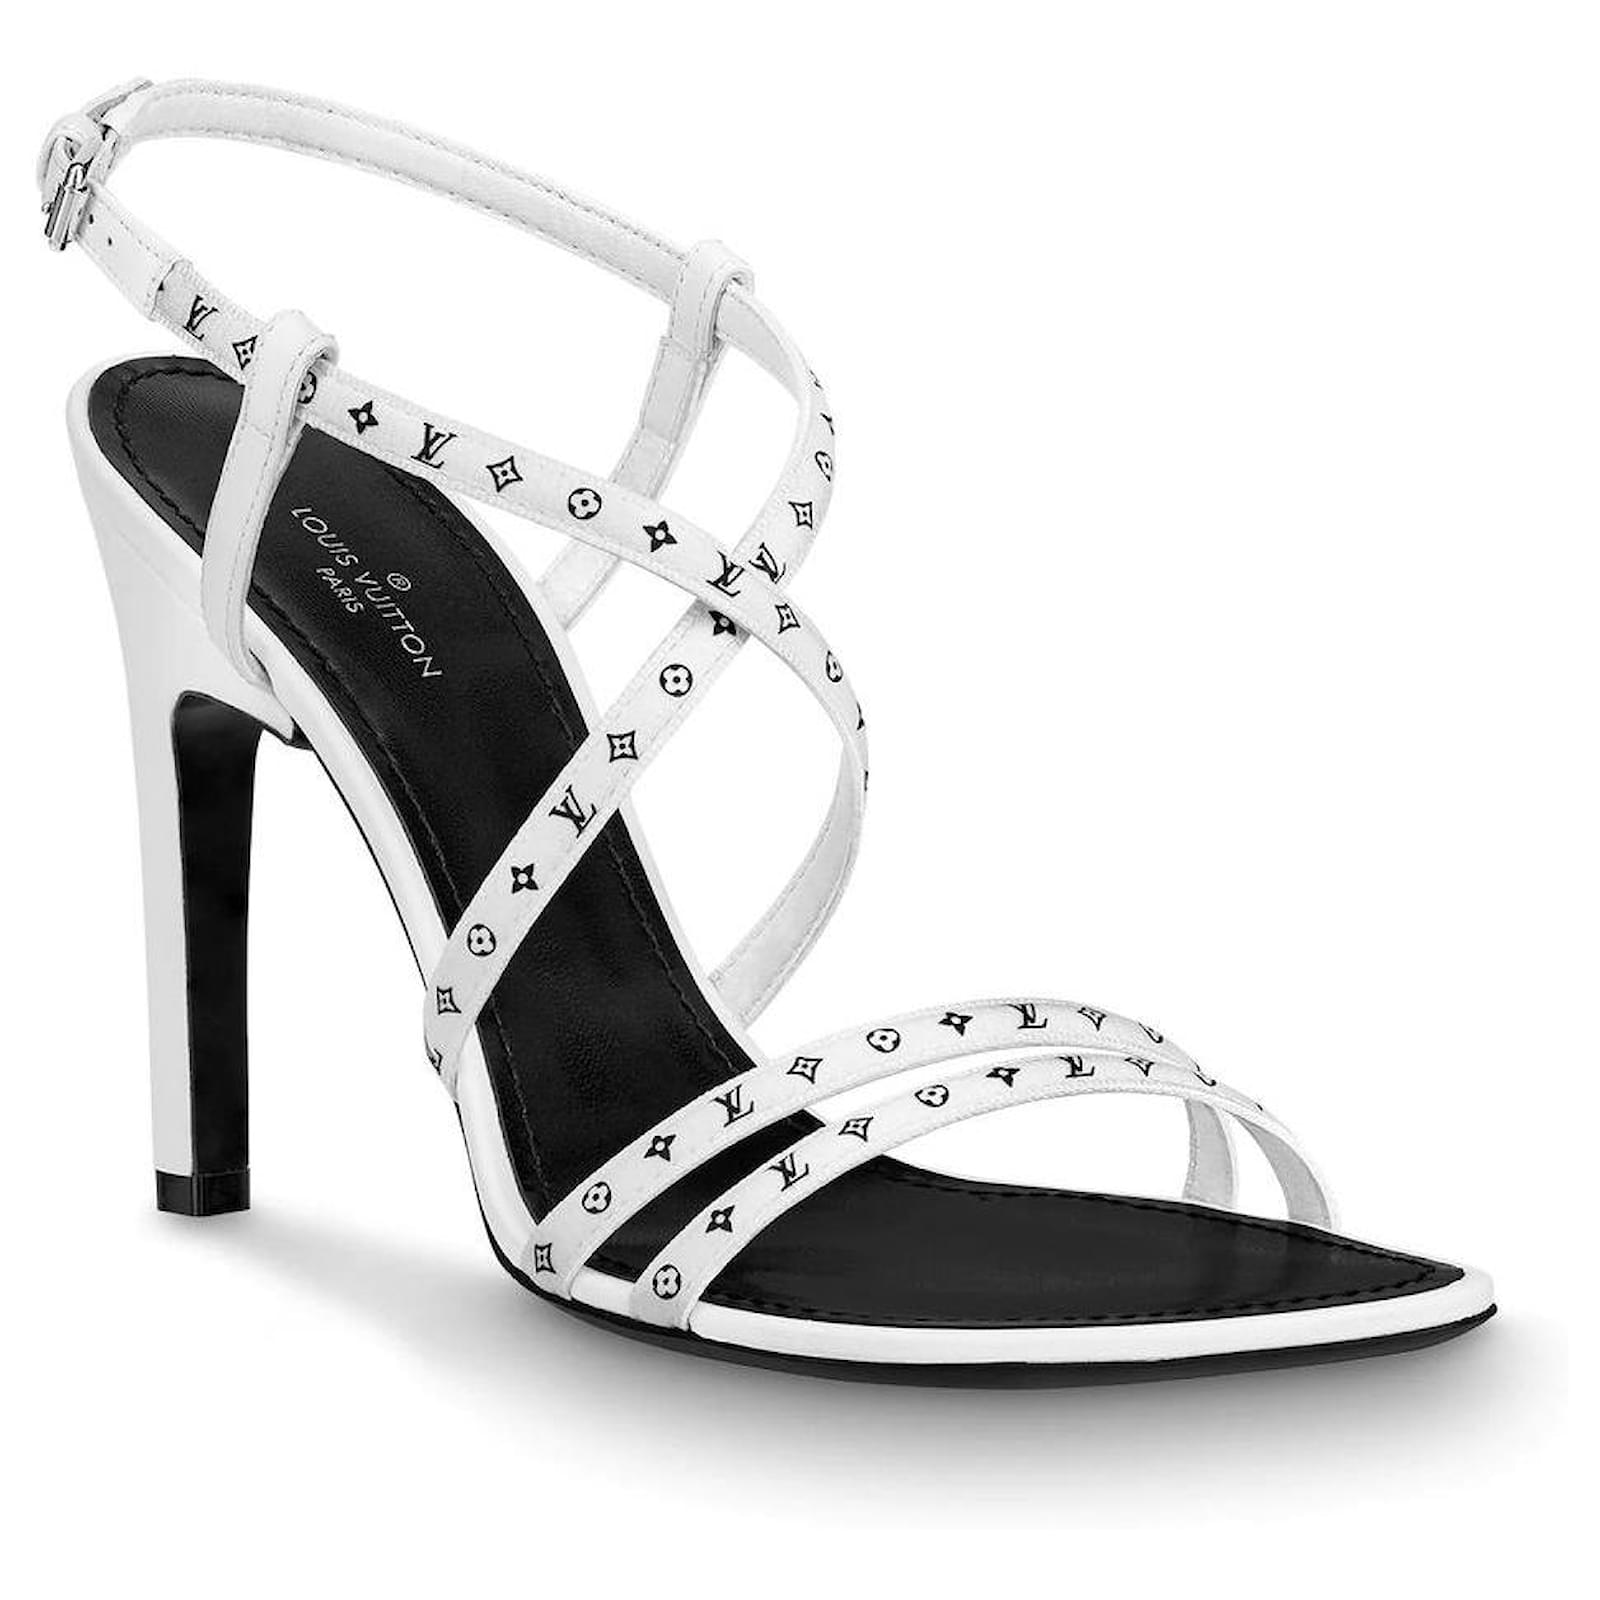 Zapatillas Para Mujer Louis Vuitton Crafty Stellar, Blanco